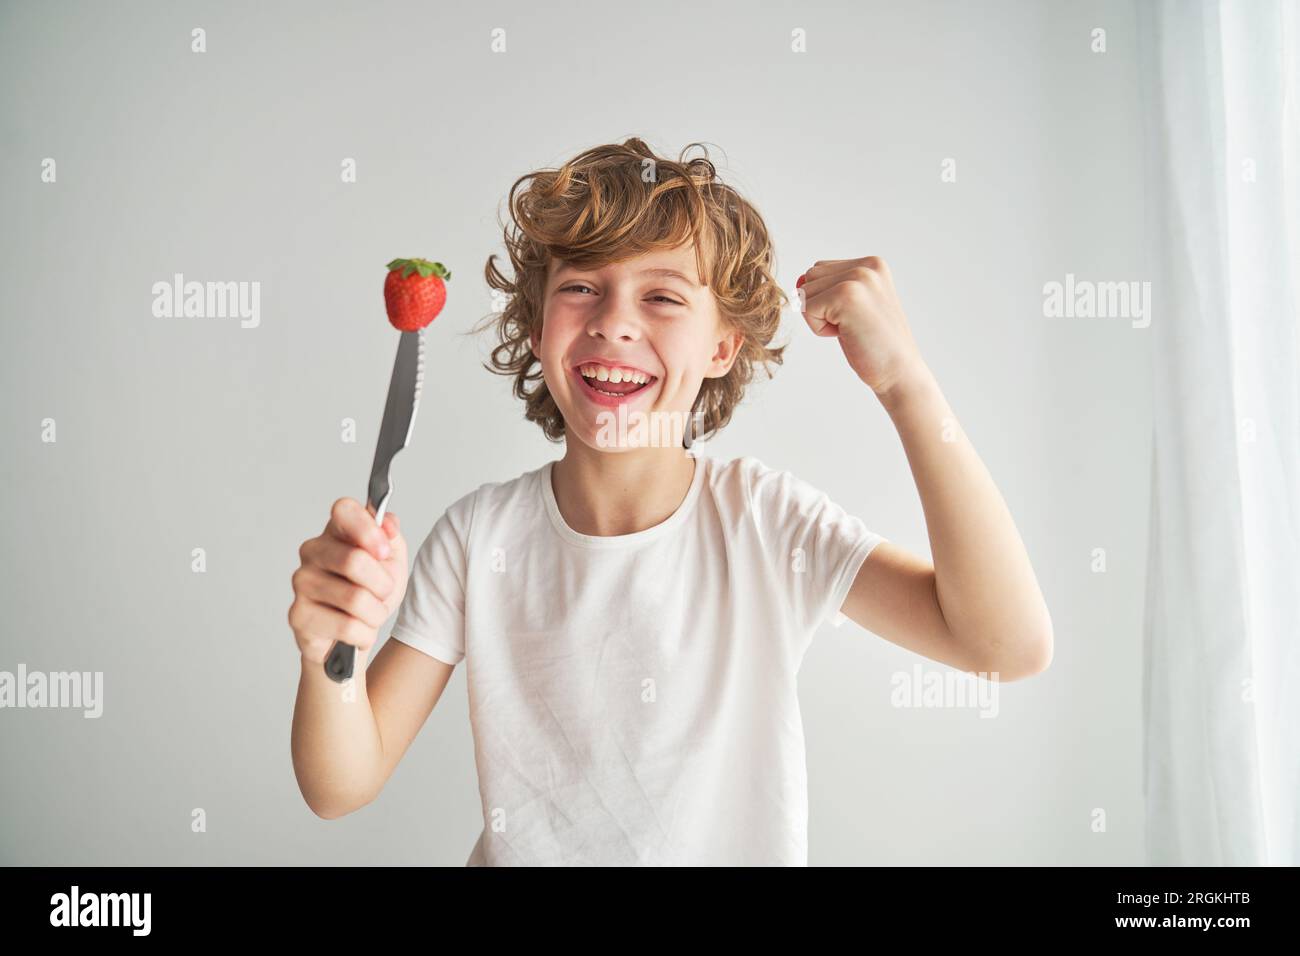 Lächelndes Kind mit frischer Beere, durchbohrt mit Messer, schaut in die Kamera und feiert den Erfolg mit geballter Faust auf weißem Hintergrund Stockfoto